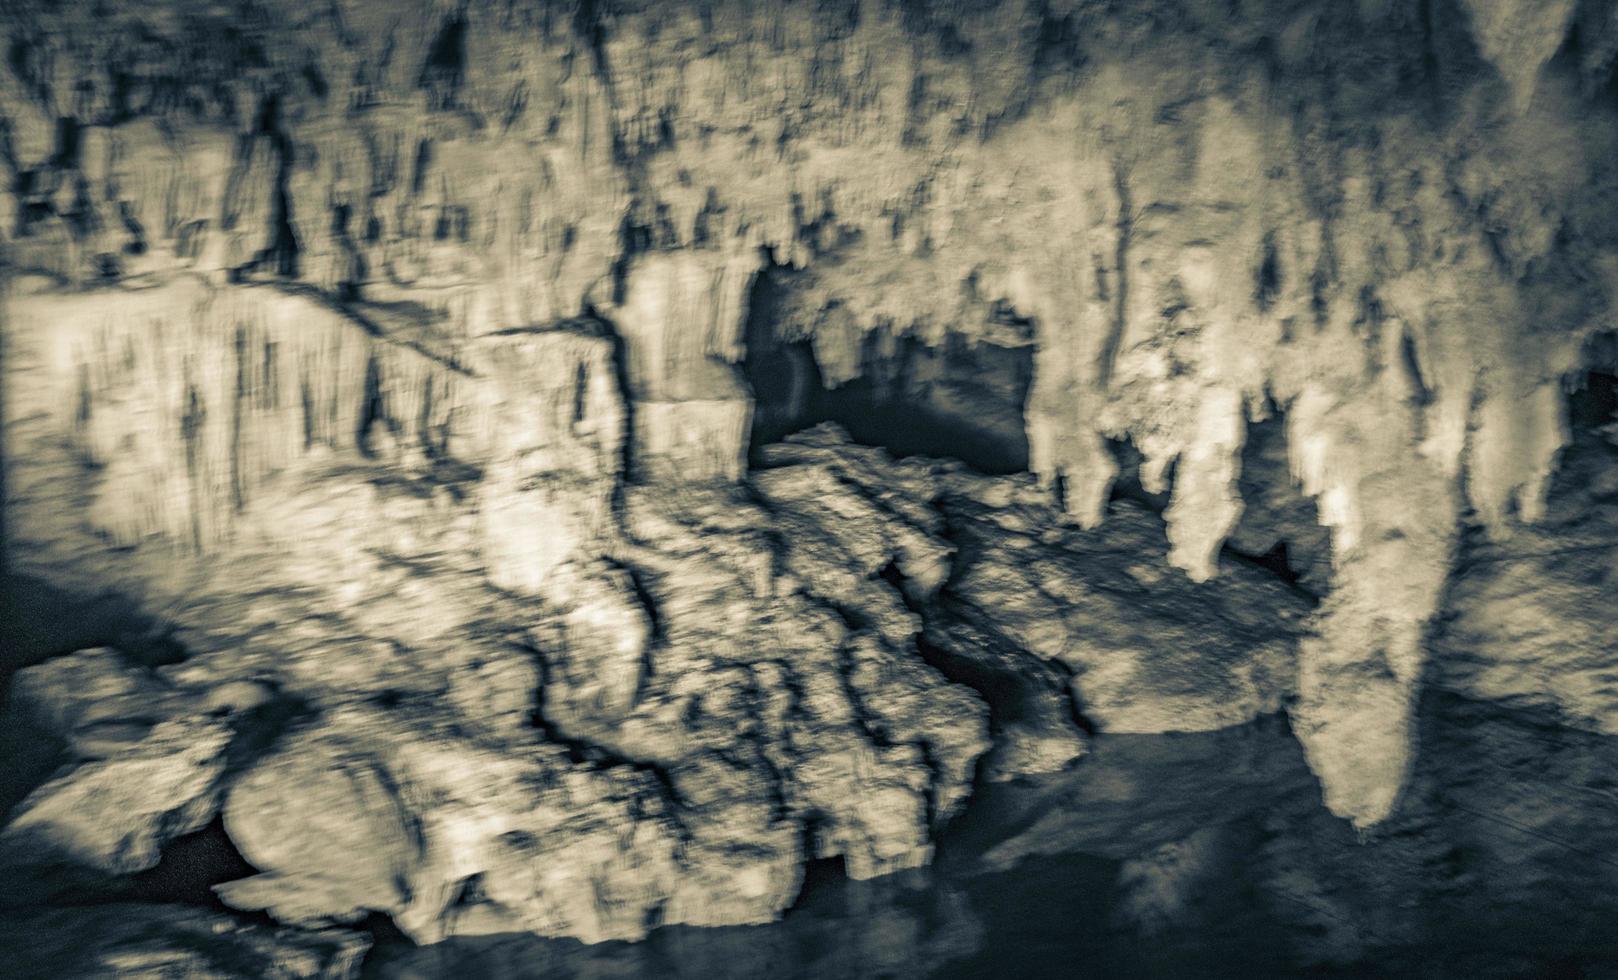 incrível água azul turquesa e caverna de calcário cenote méxico. foto